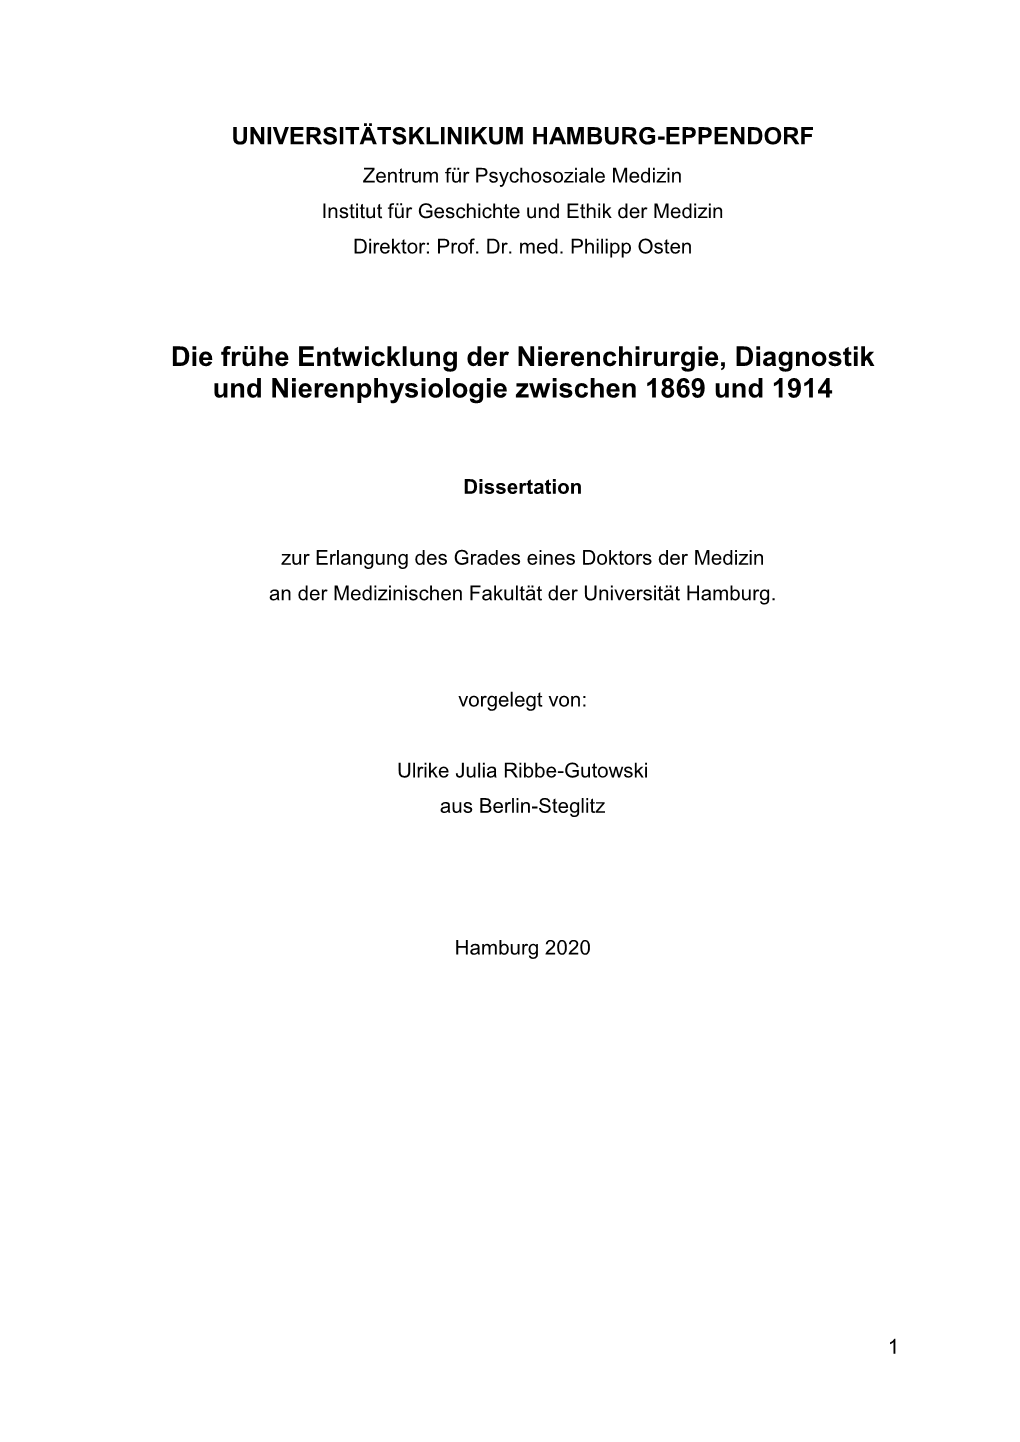 Die Frühe Entwicklung Der Nierenchirurgie, Diagnostik Und Nierenphysiologie Zwischen 1869 Und 1914